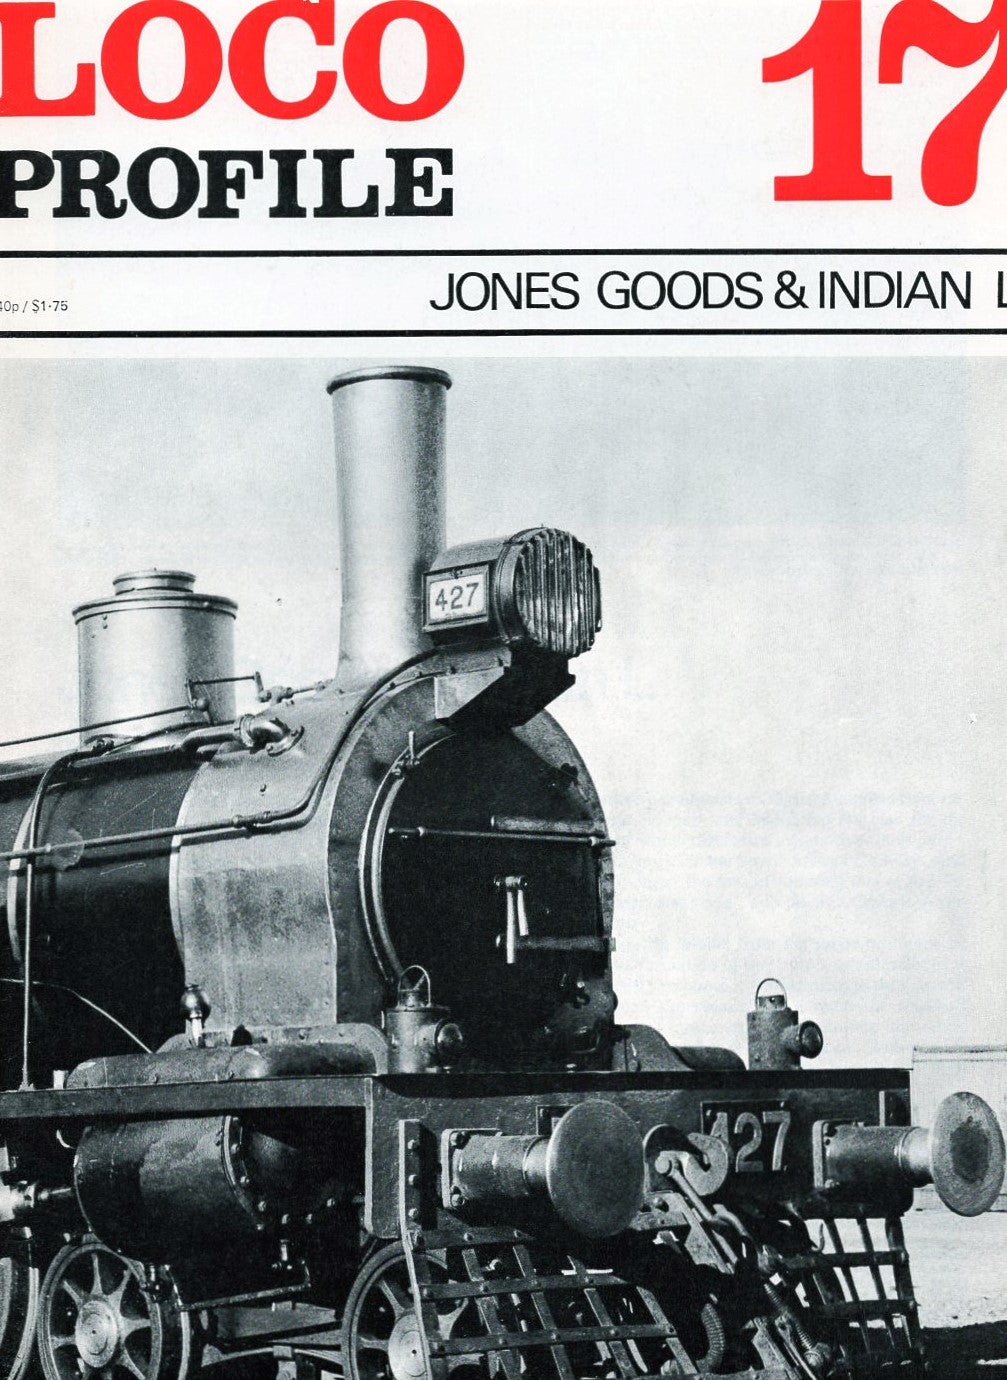 Loco Profile - Issue 17: Jones Goods & Indian L